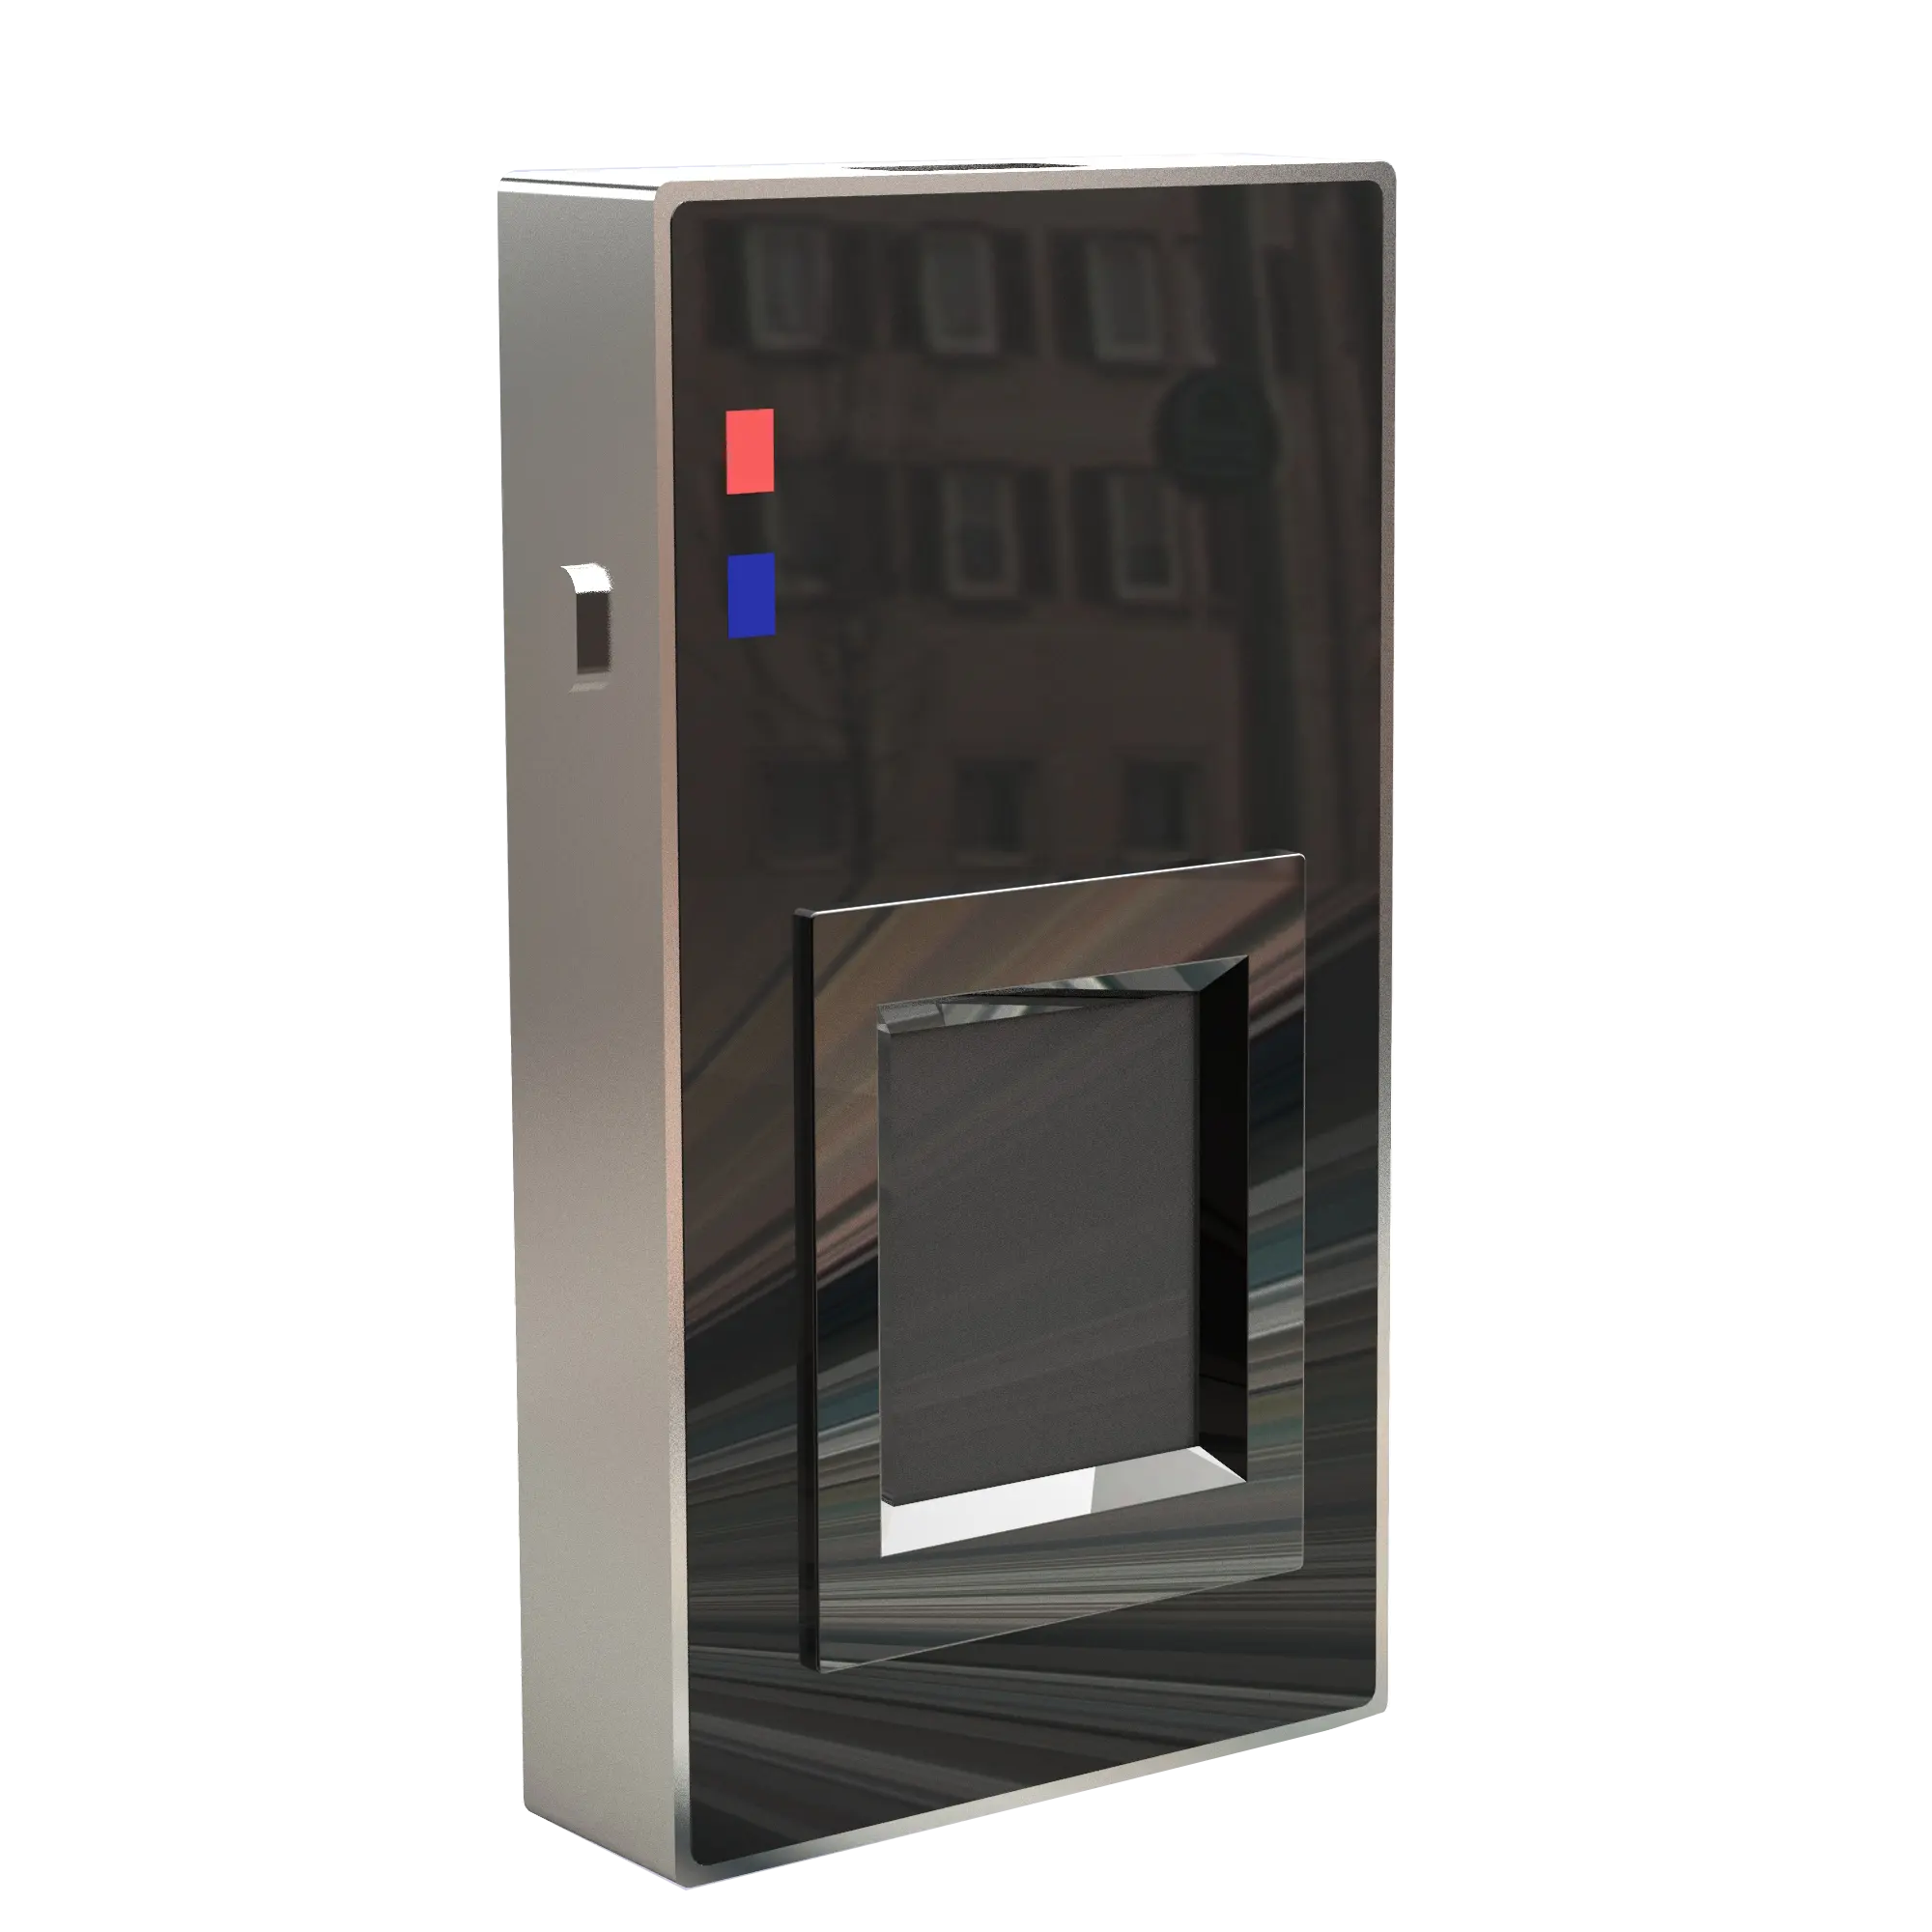 FAP30 400*500 Scanner Sem Fio FBI Certificado Biométrico Detecção De Dedo Vivo Leitor de impressão digital capacitivo biométrico